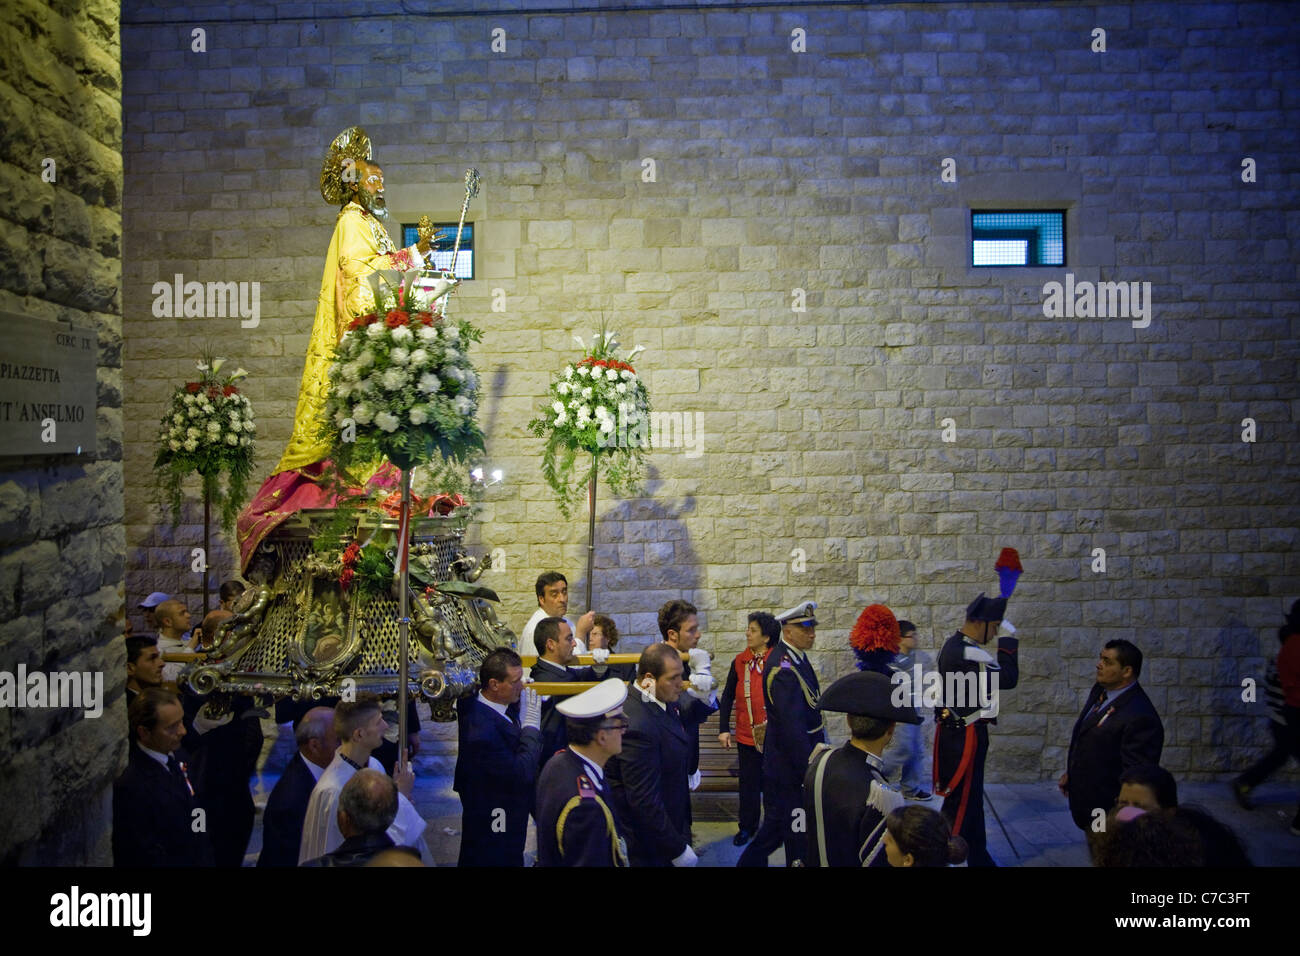 Saint Nicholas' tradizionale processione che si svolge entro la città vecchia di Bari nel sud dell'Italia. Foto Stock